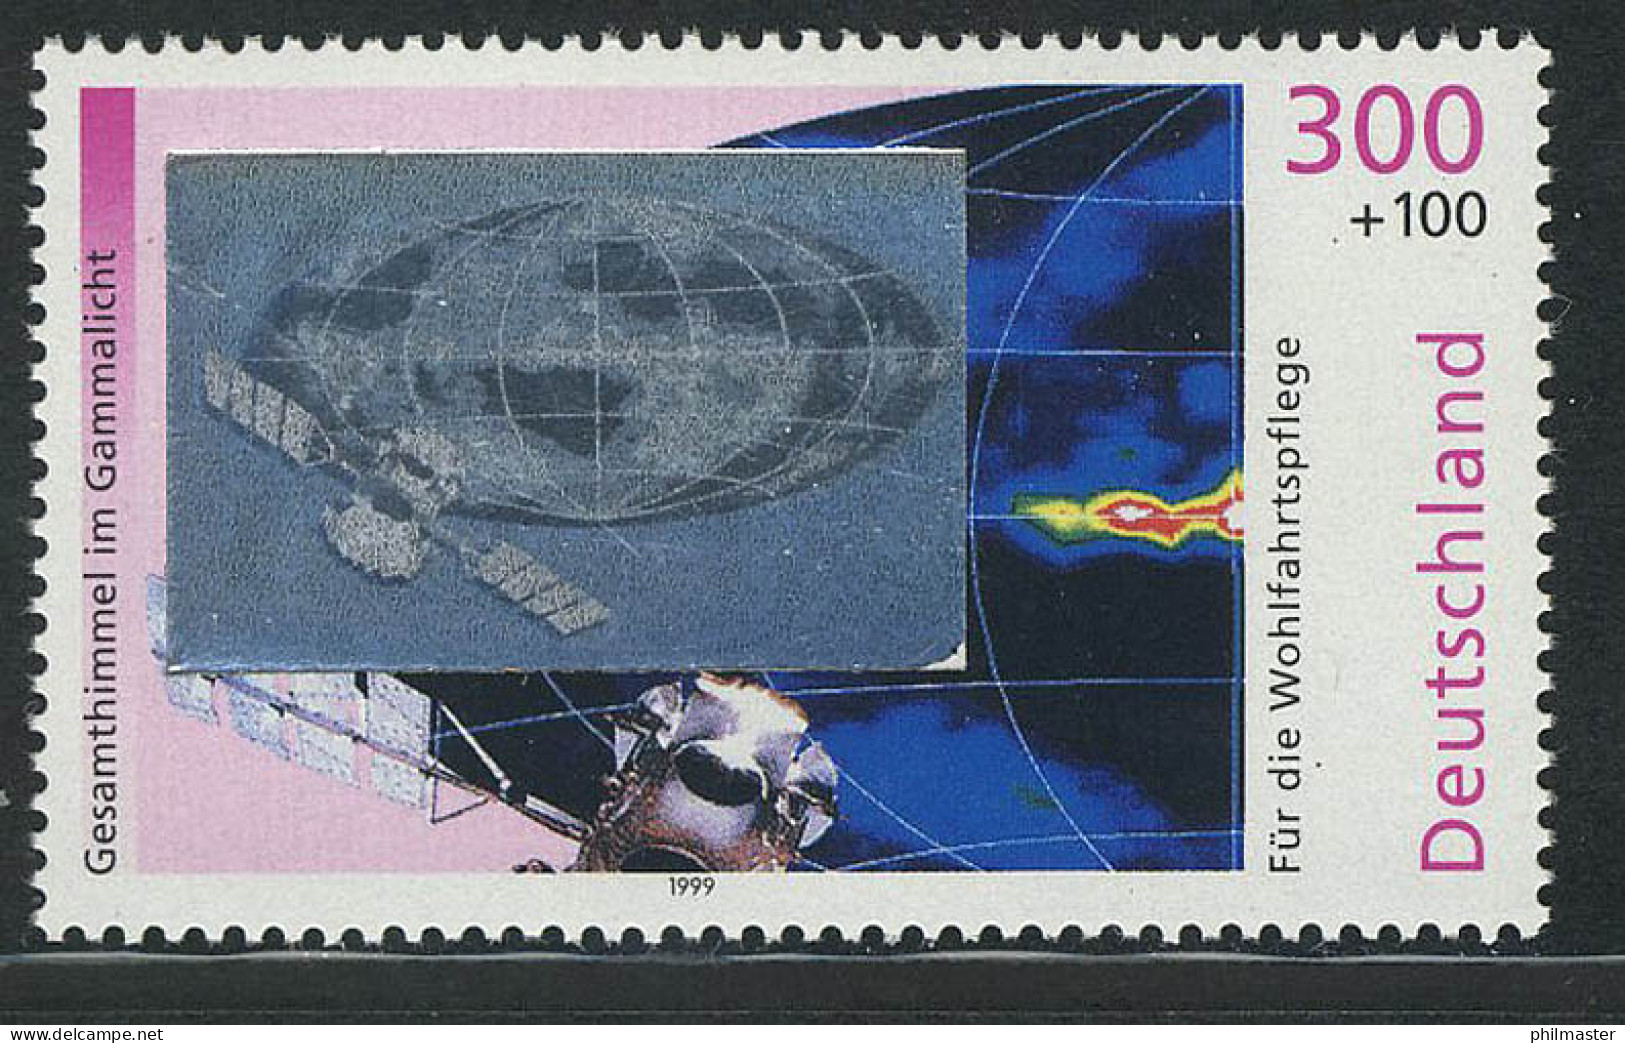 2081 Kosmos Gammastrahlung, Mit Hologramm Auf Der Marke, Postfrisch ** - Hologramme